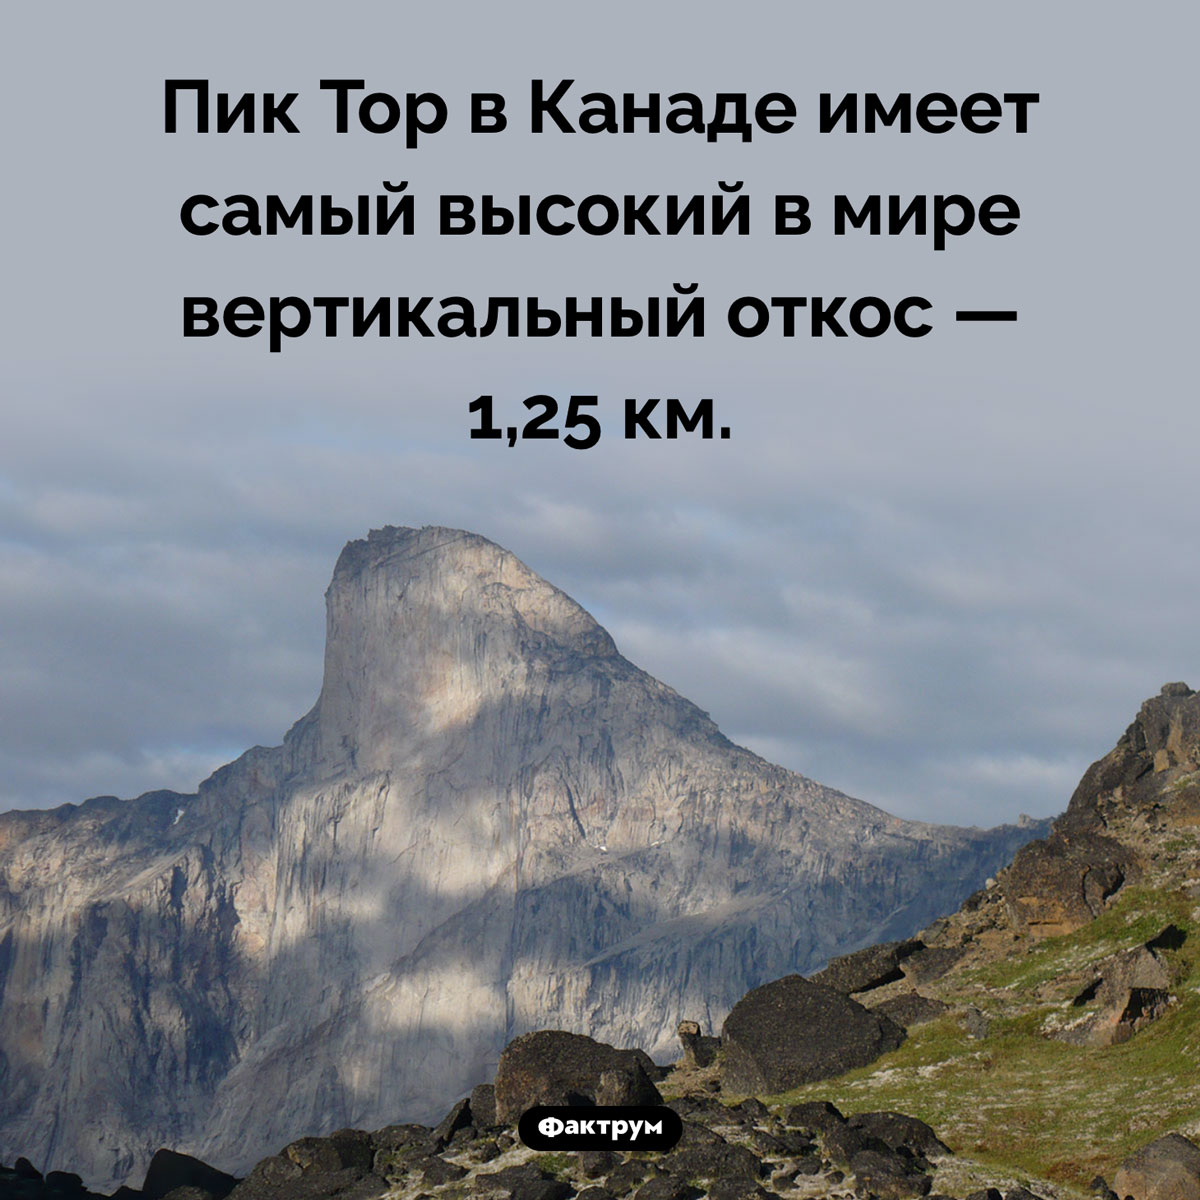 Самый высокий откос в мире. Пик Тор в Канаде имеет самый высокий в мире вертикальный откос — 1,25 км.